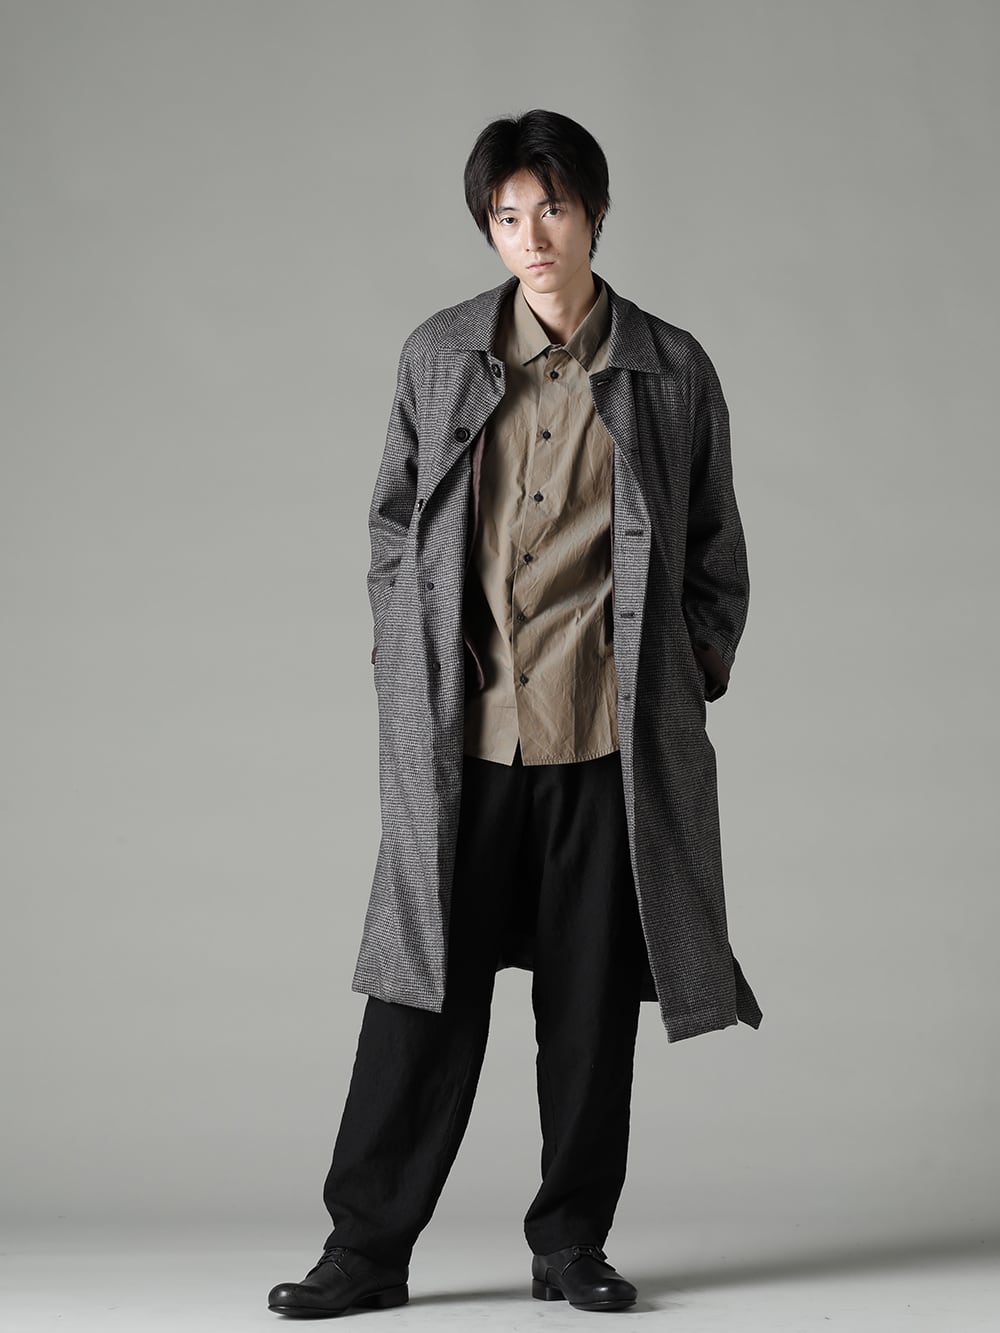 Japanese Wide-leg Pants Men Extra Baggy Cotton Linen Meditation Trousers  M-3XL L